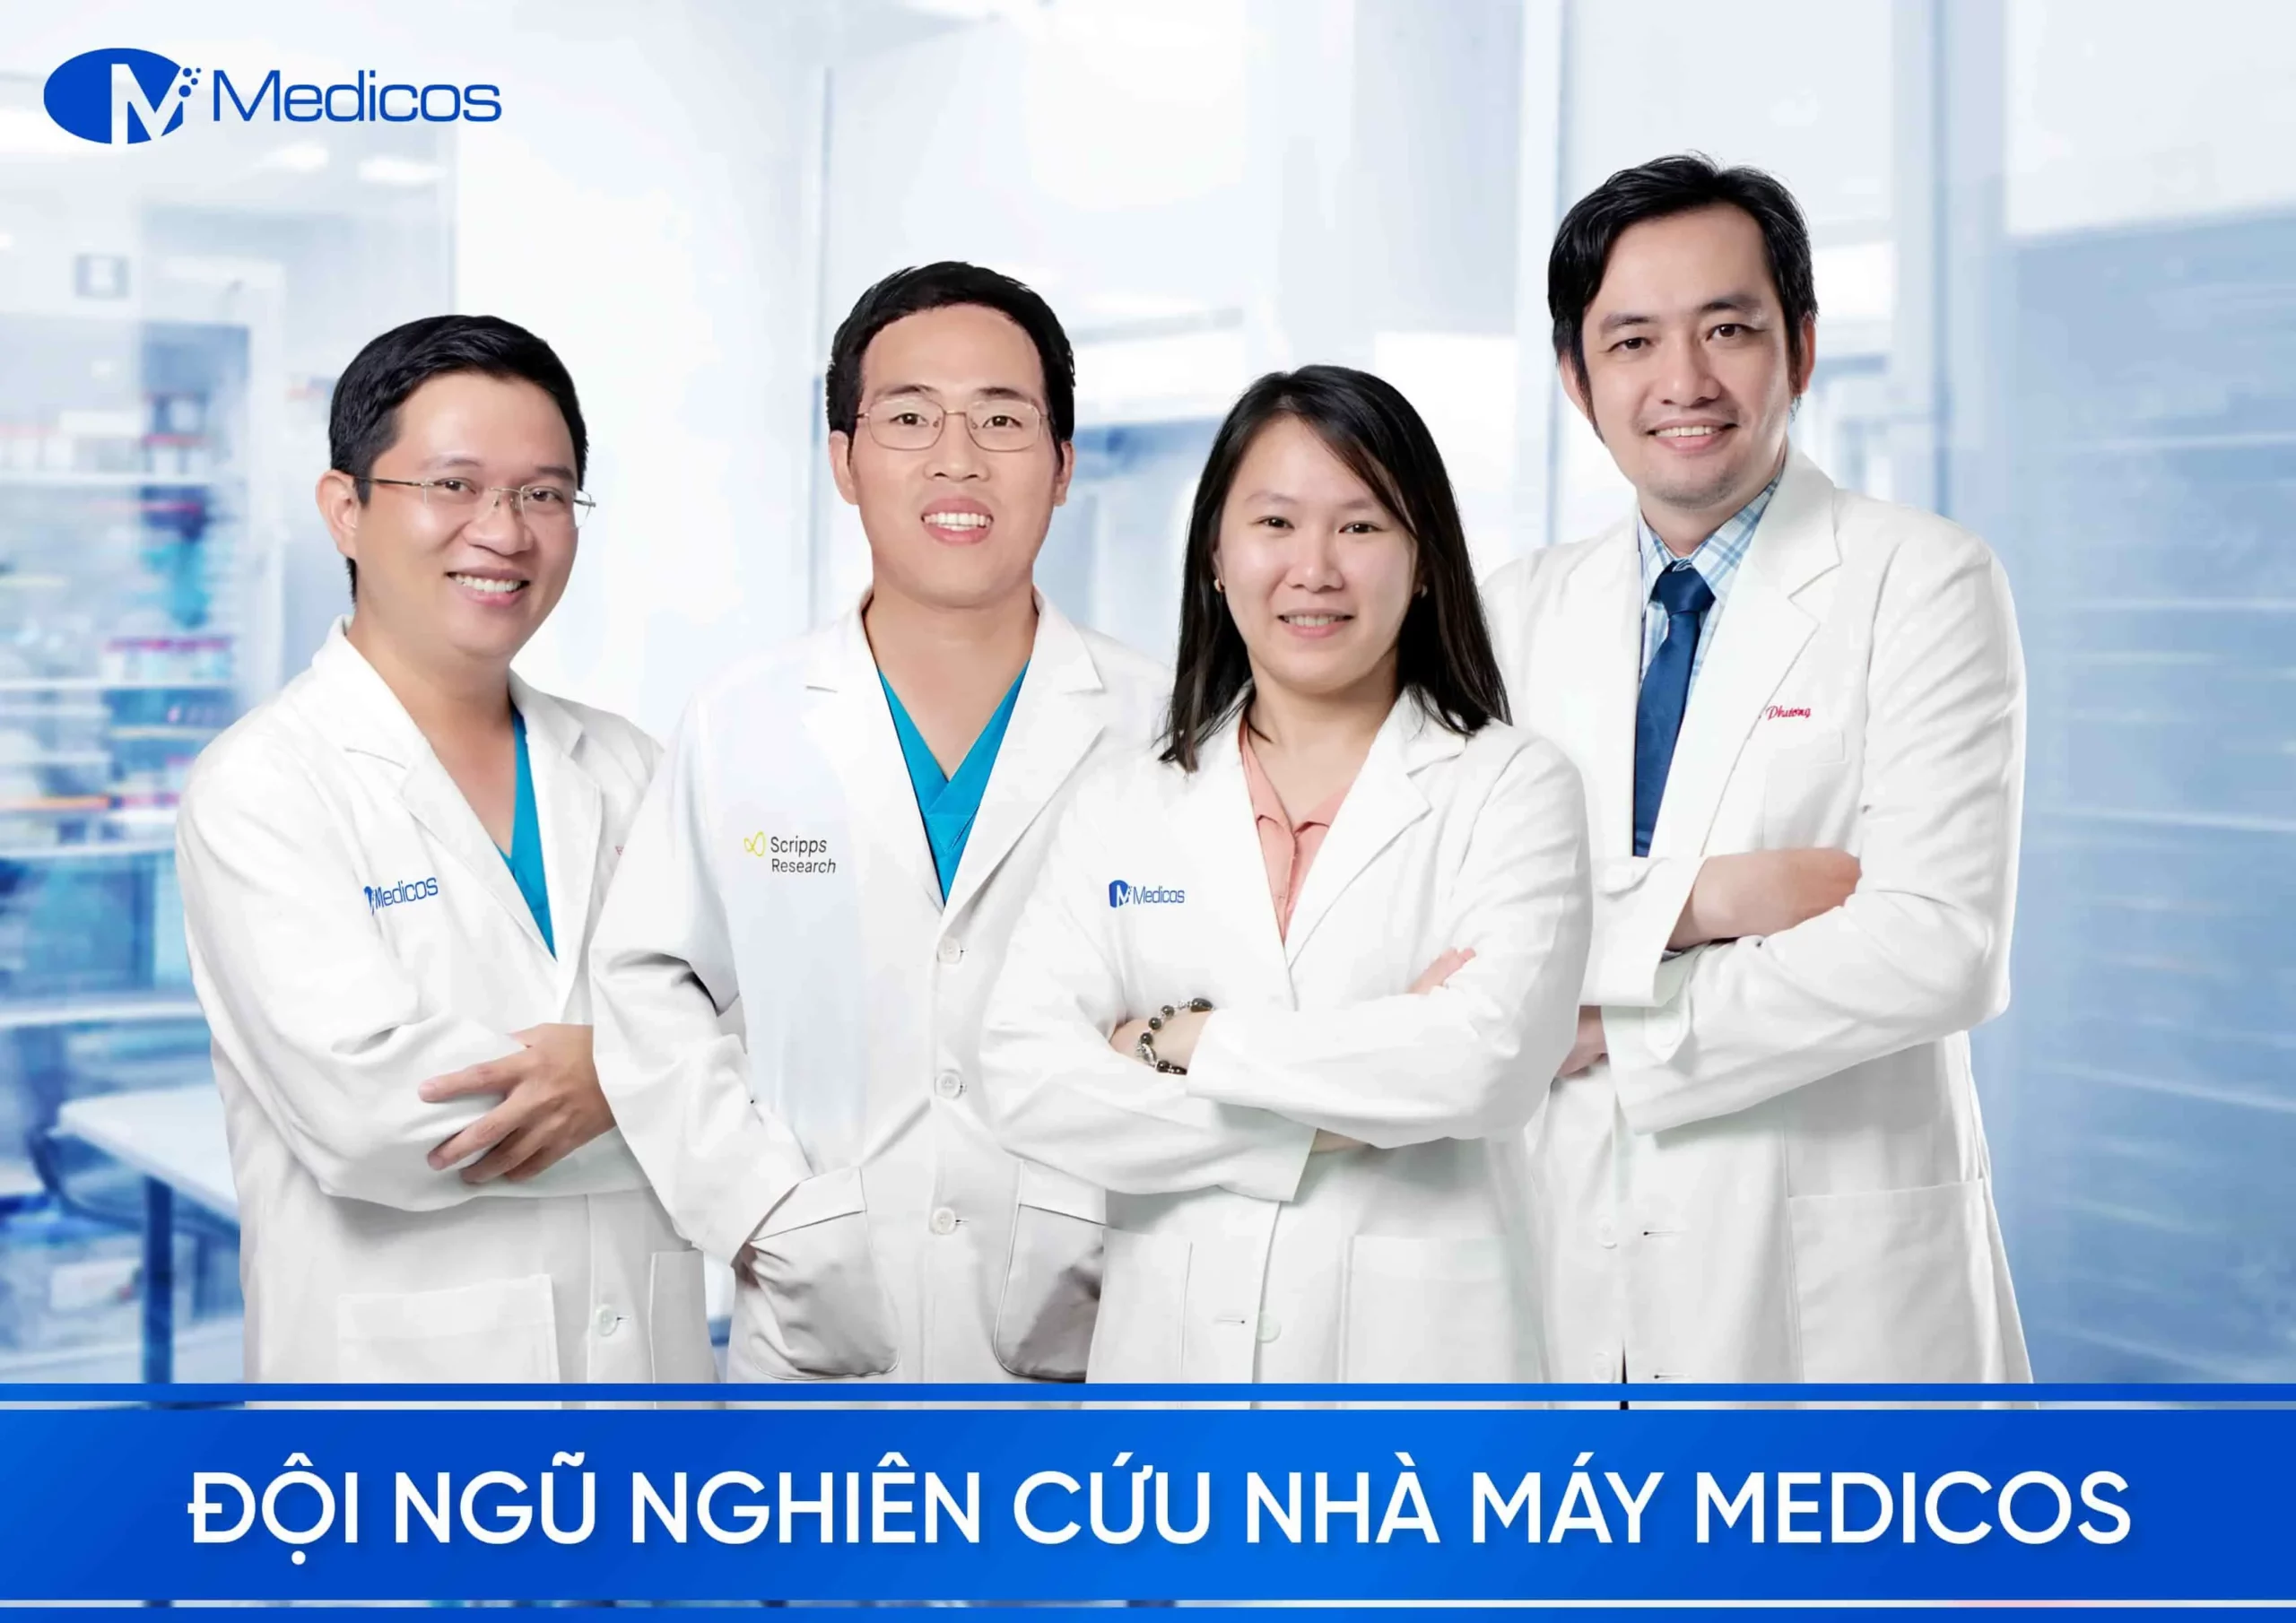 Đội ngũ nghiên cứu tại nhà máy Medicos